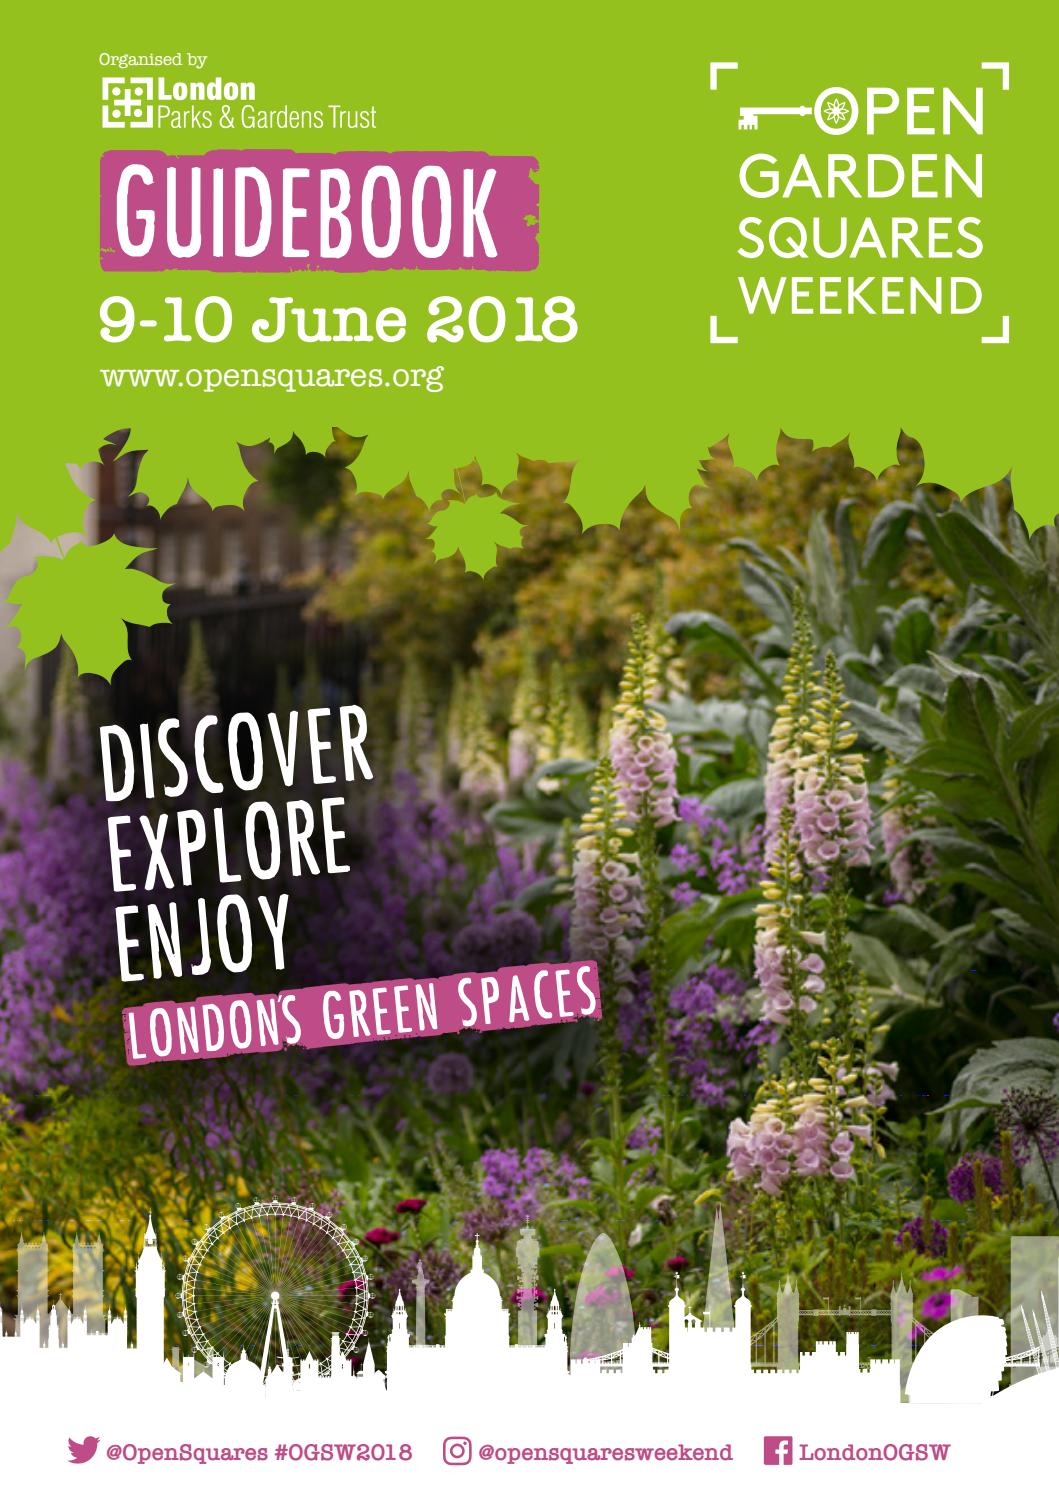 Japanischer Garten Düsseldorf Einzigartig Open Garden Squares Weekend Guidebook 2018 by London Parks